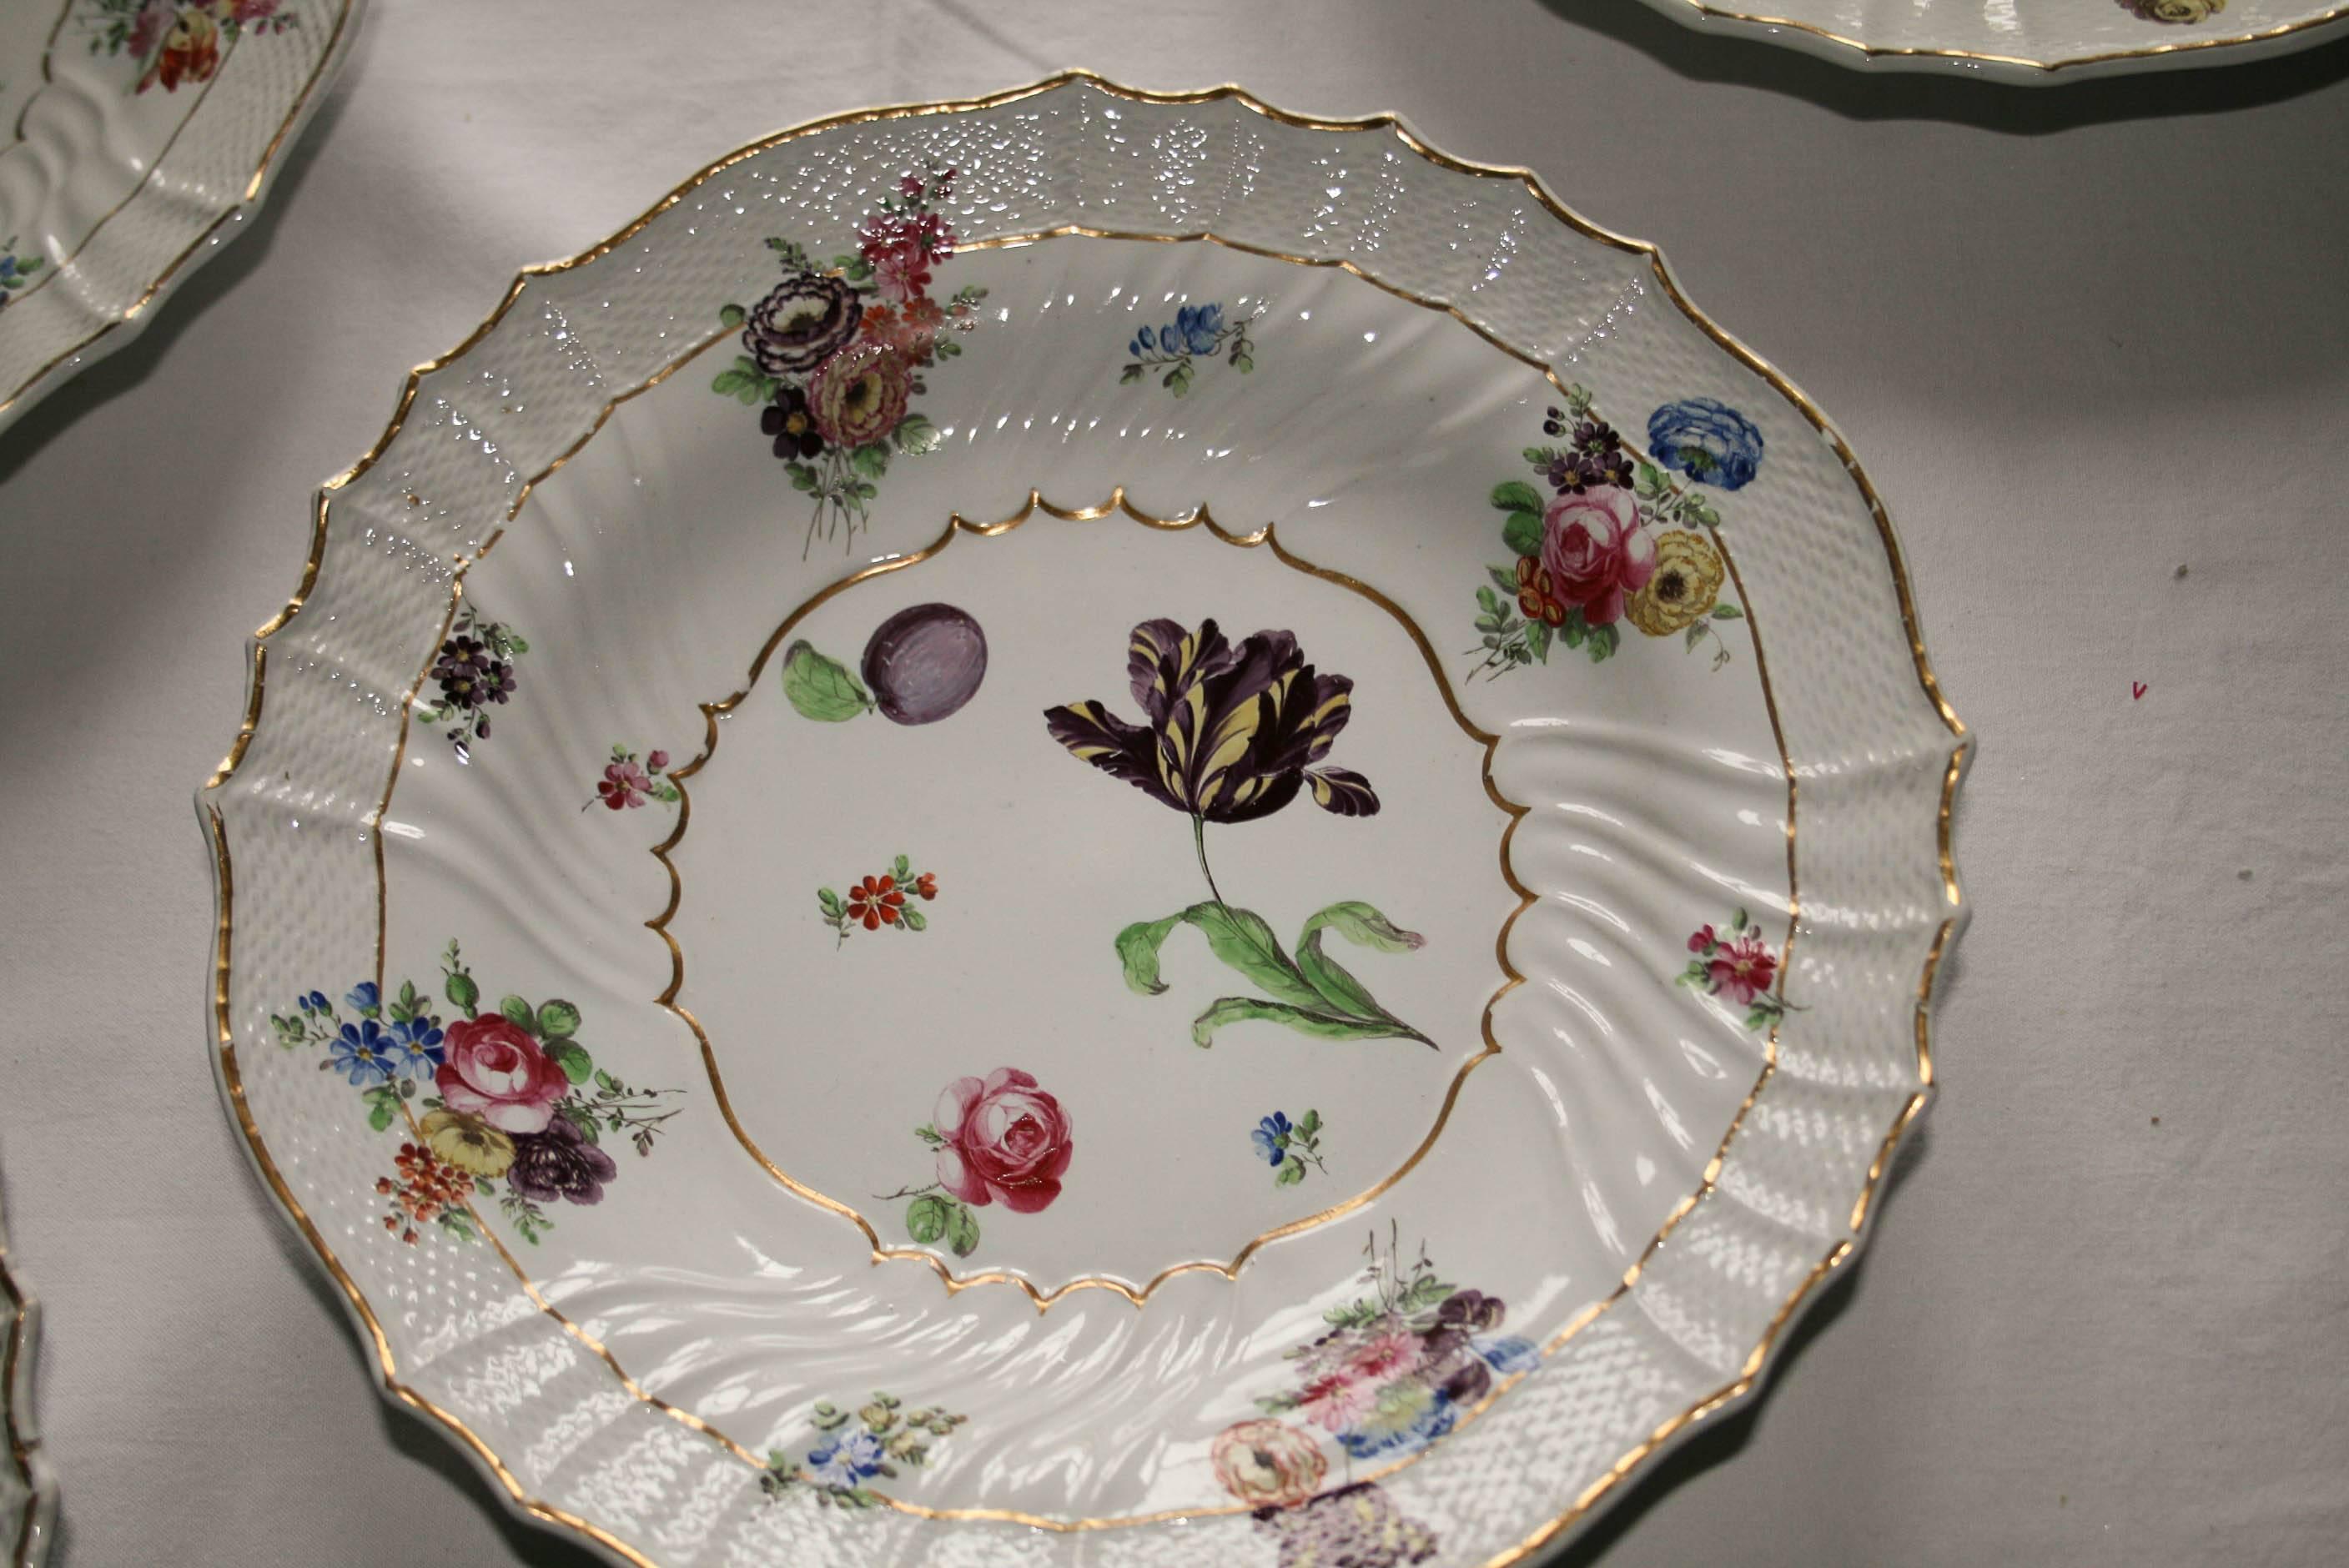 Cet ensemble de huit plats en porcelaine peints à la main et ornés de fleurs a été fabriqué par Richard Ginori dans le siège historique de Doccia (Toscane, Italie), l'un des producteurs les plus importants et les plus célèbres d'Europe au XVIIIe